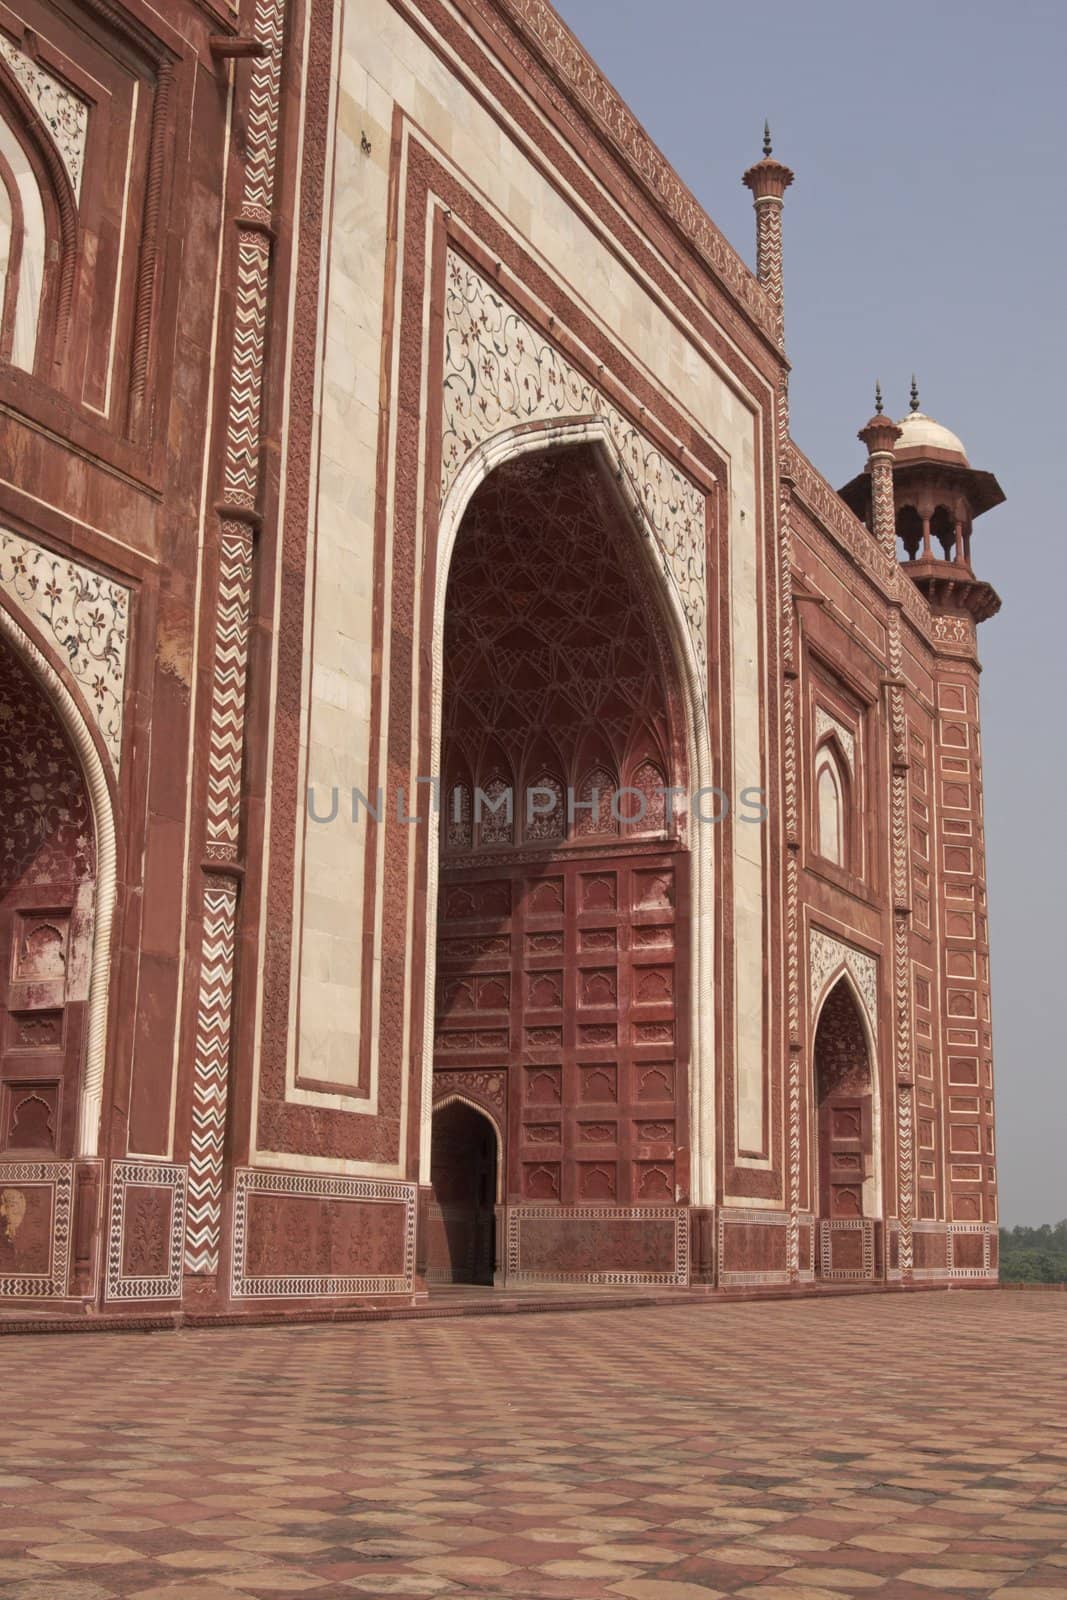 Mughal Architecture by JeremyRichards